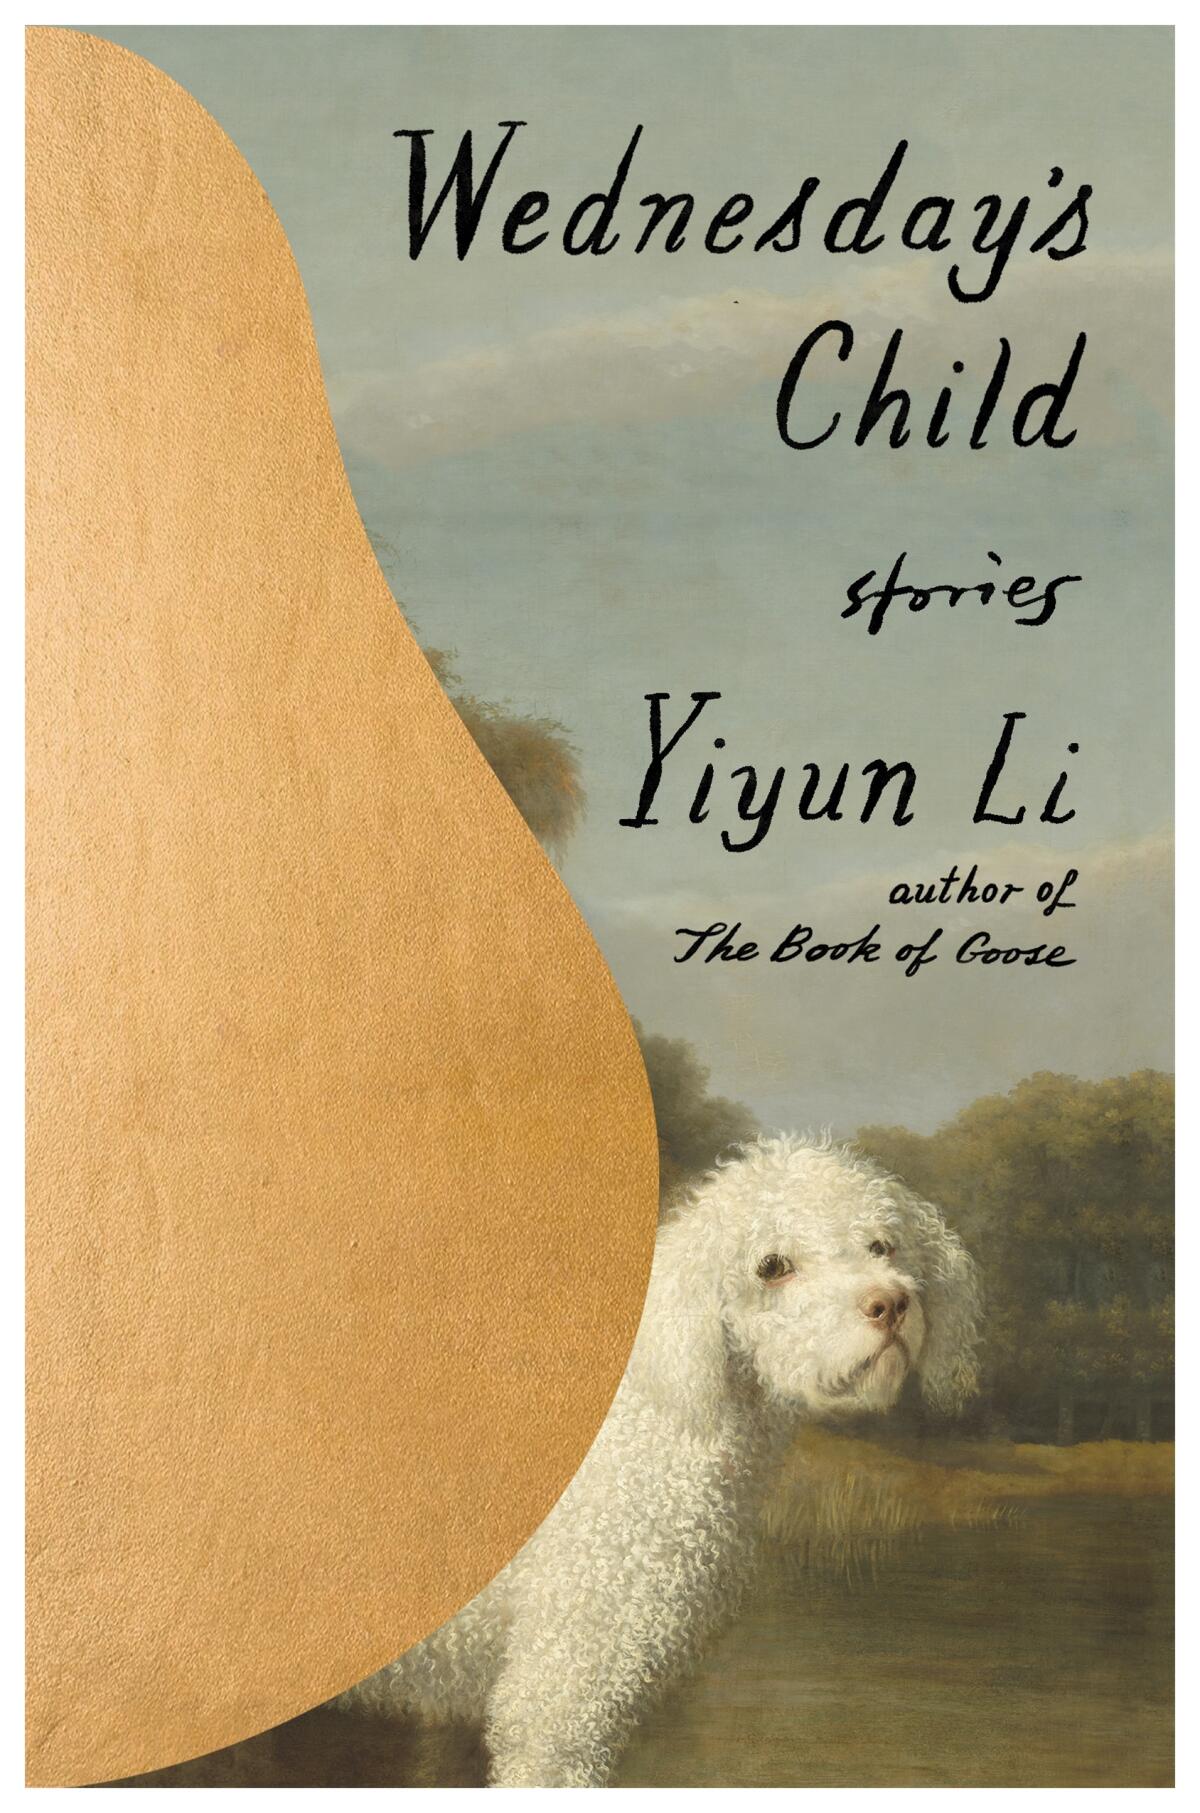 "Wednesday's Child," by Yiyun Li